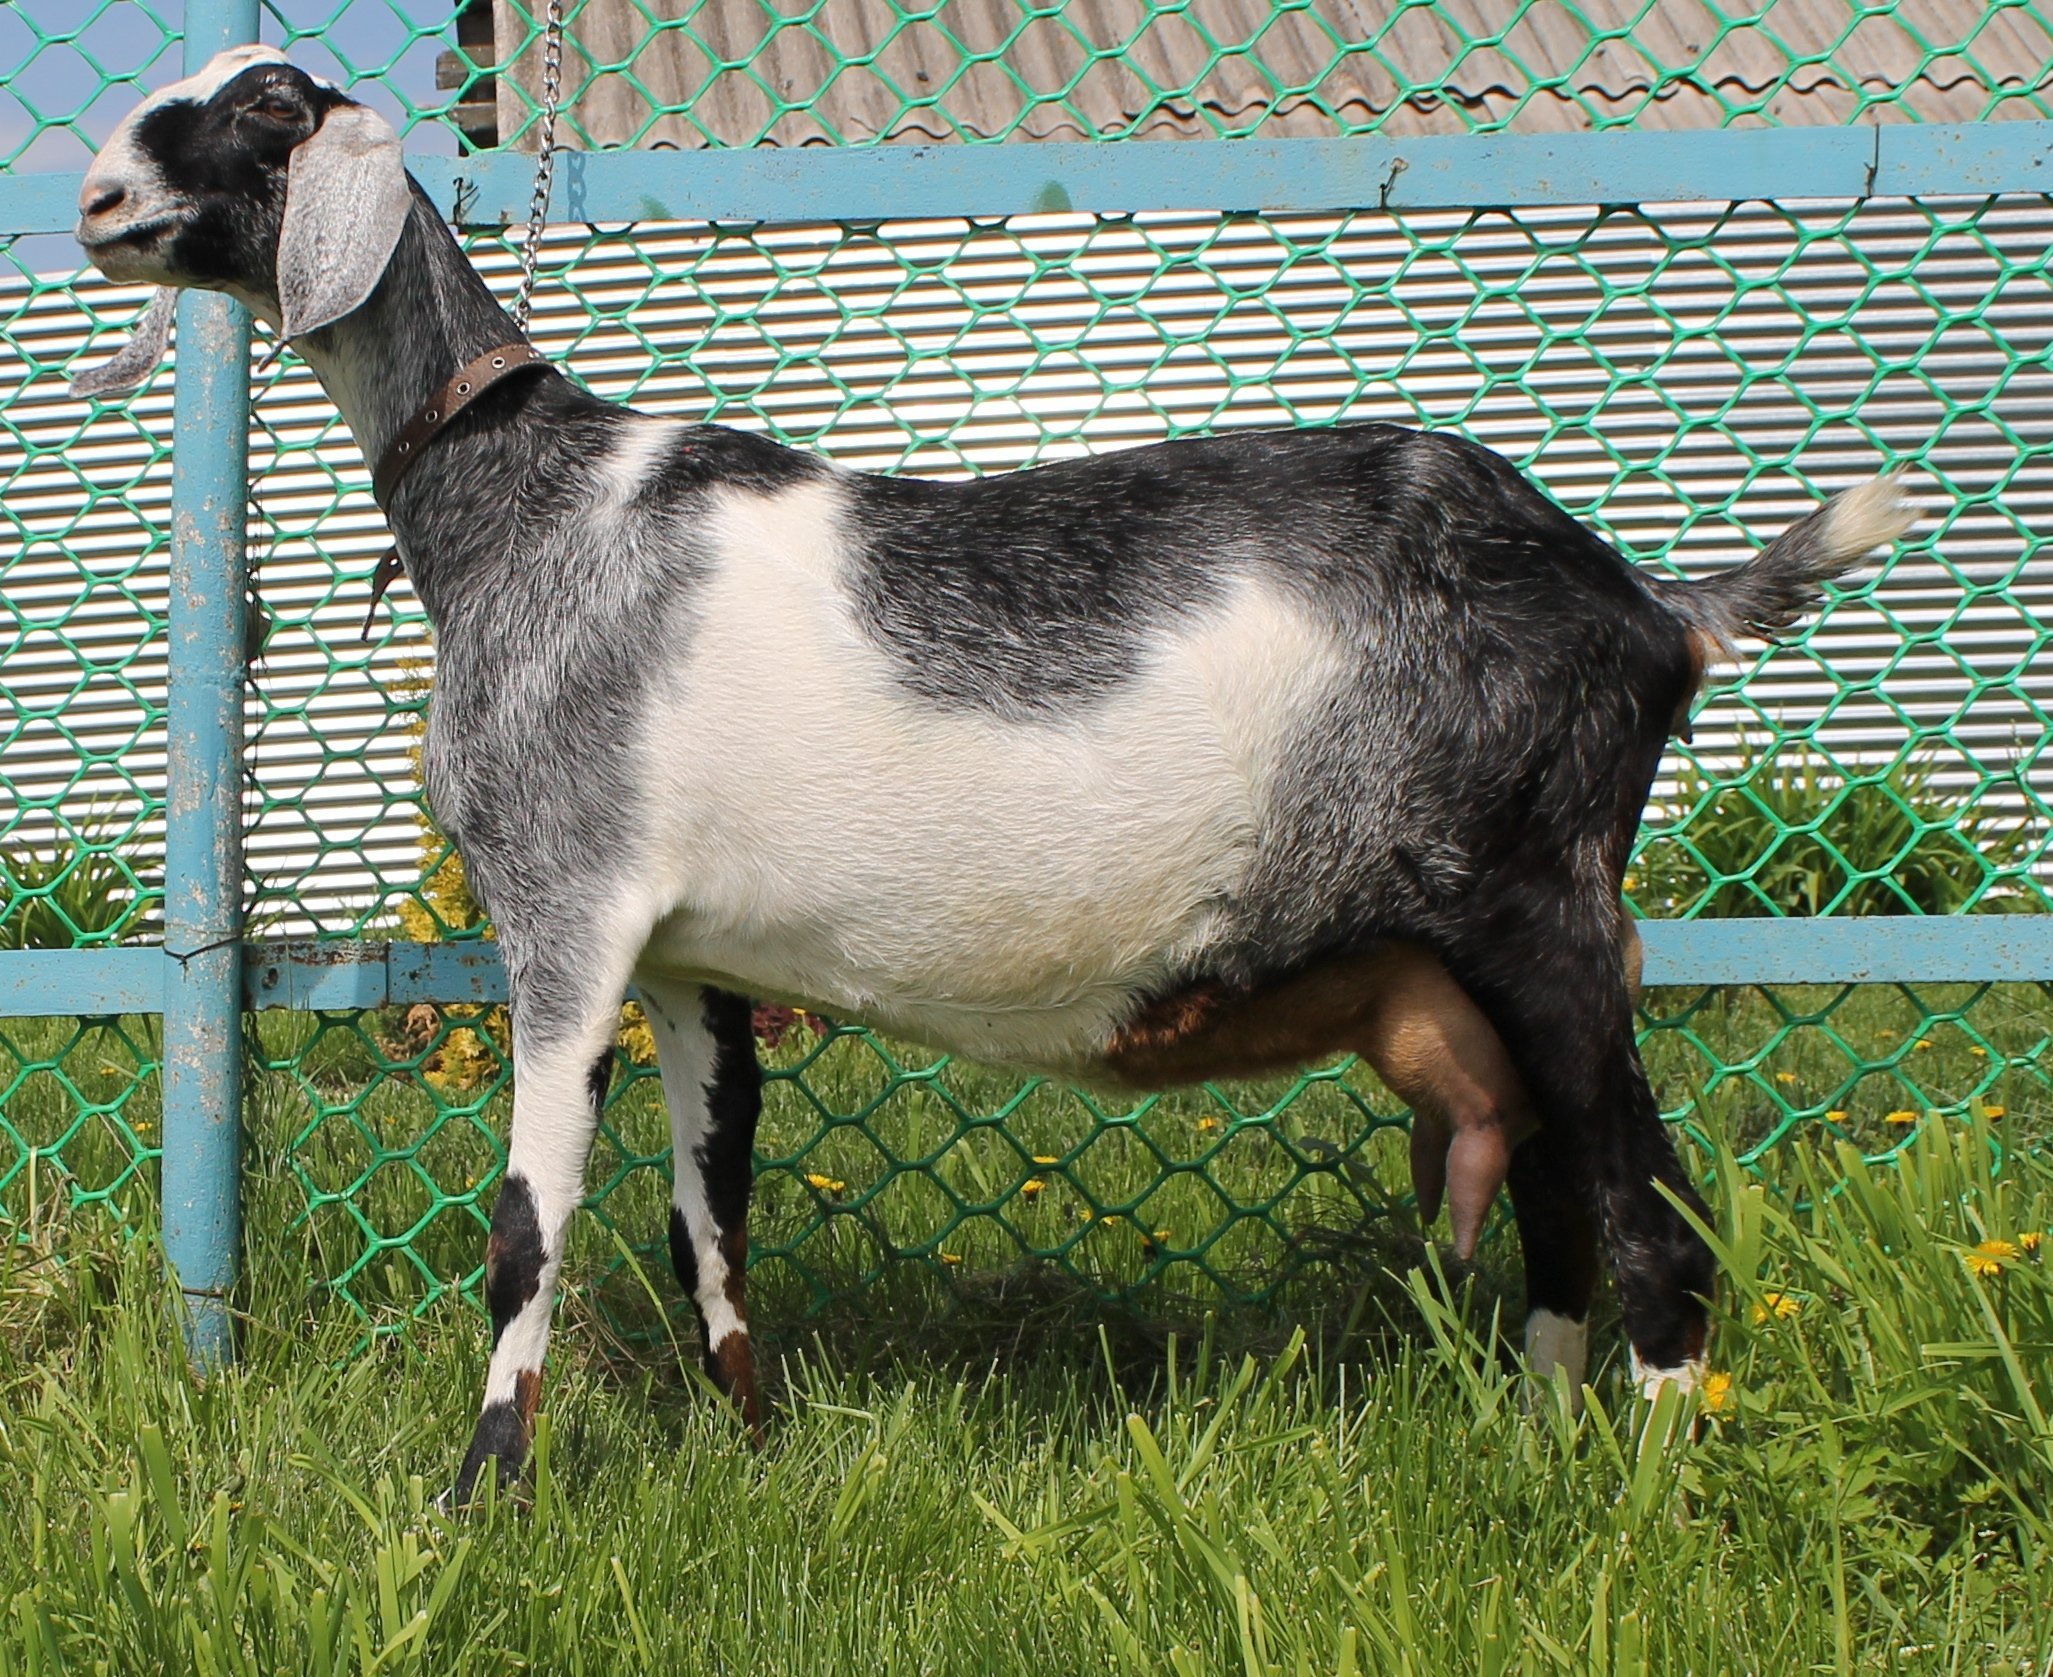 Породы коз с фотографиями и названиями и описанием молочные